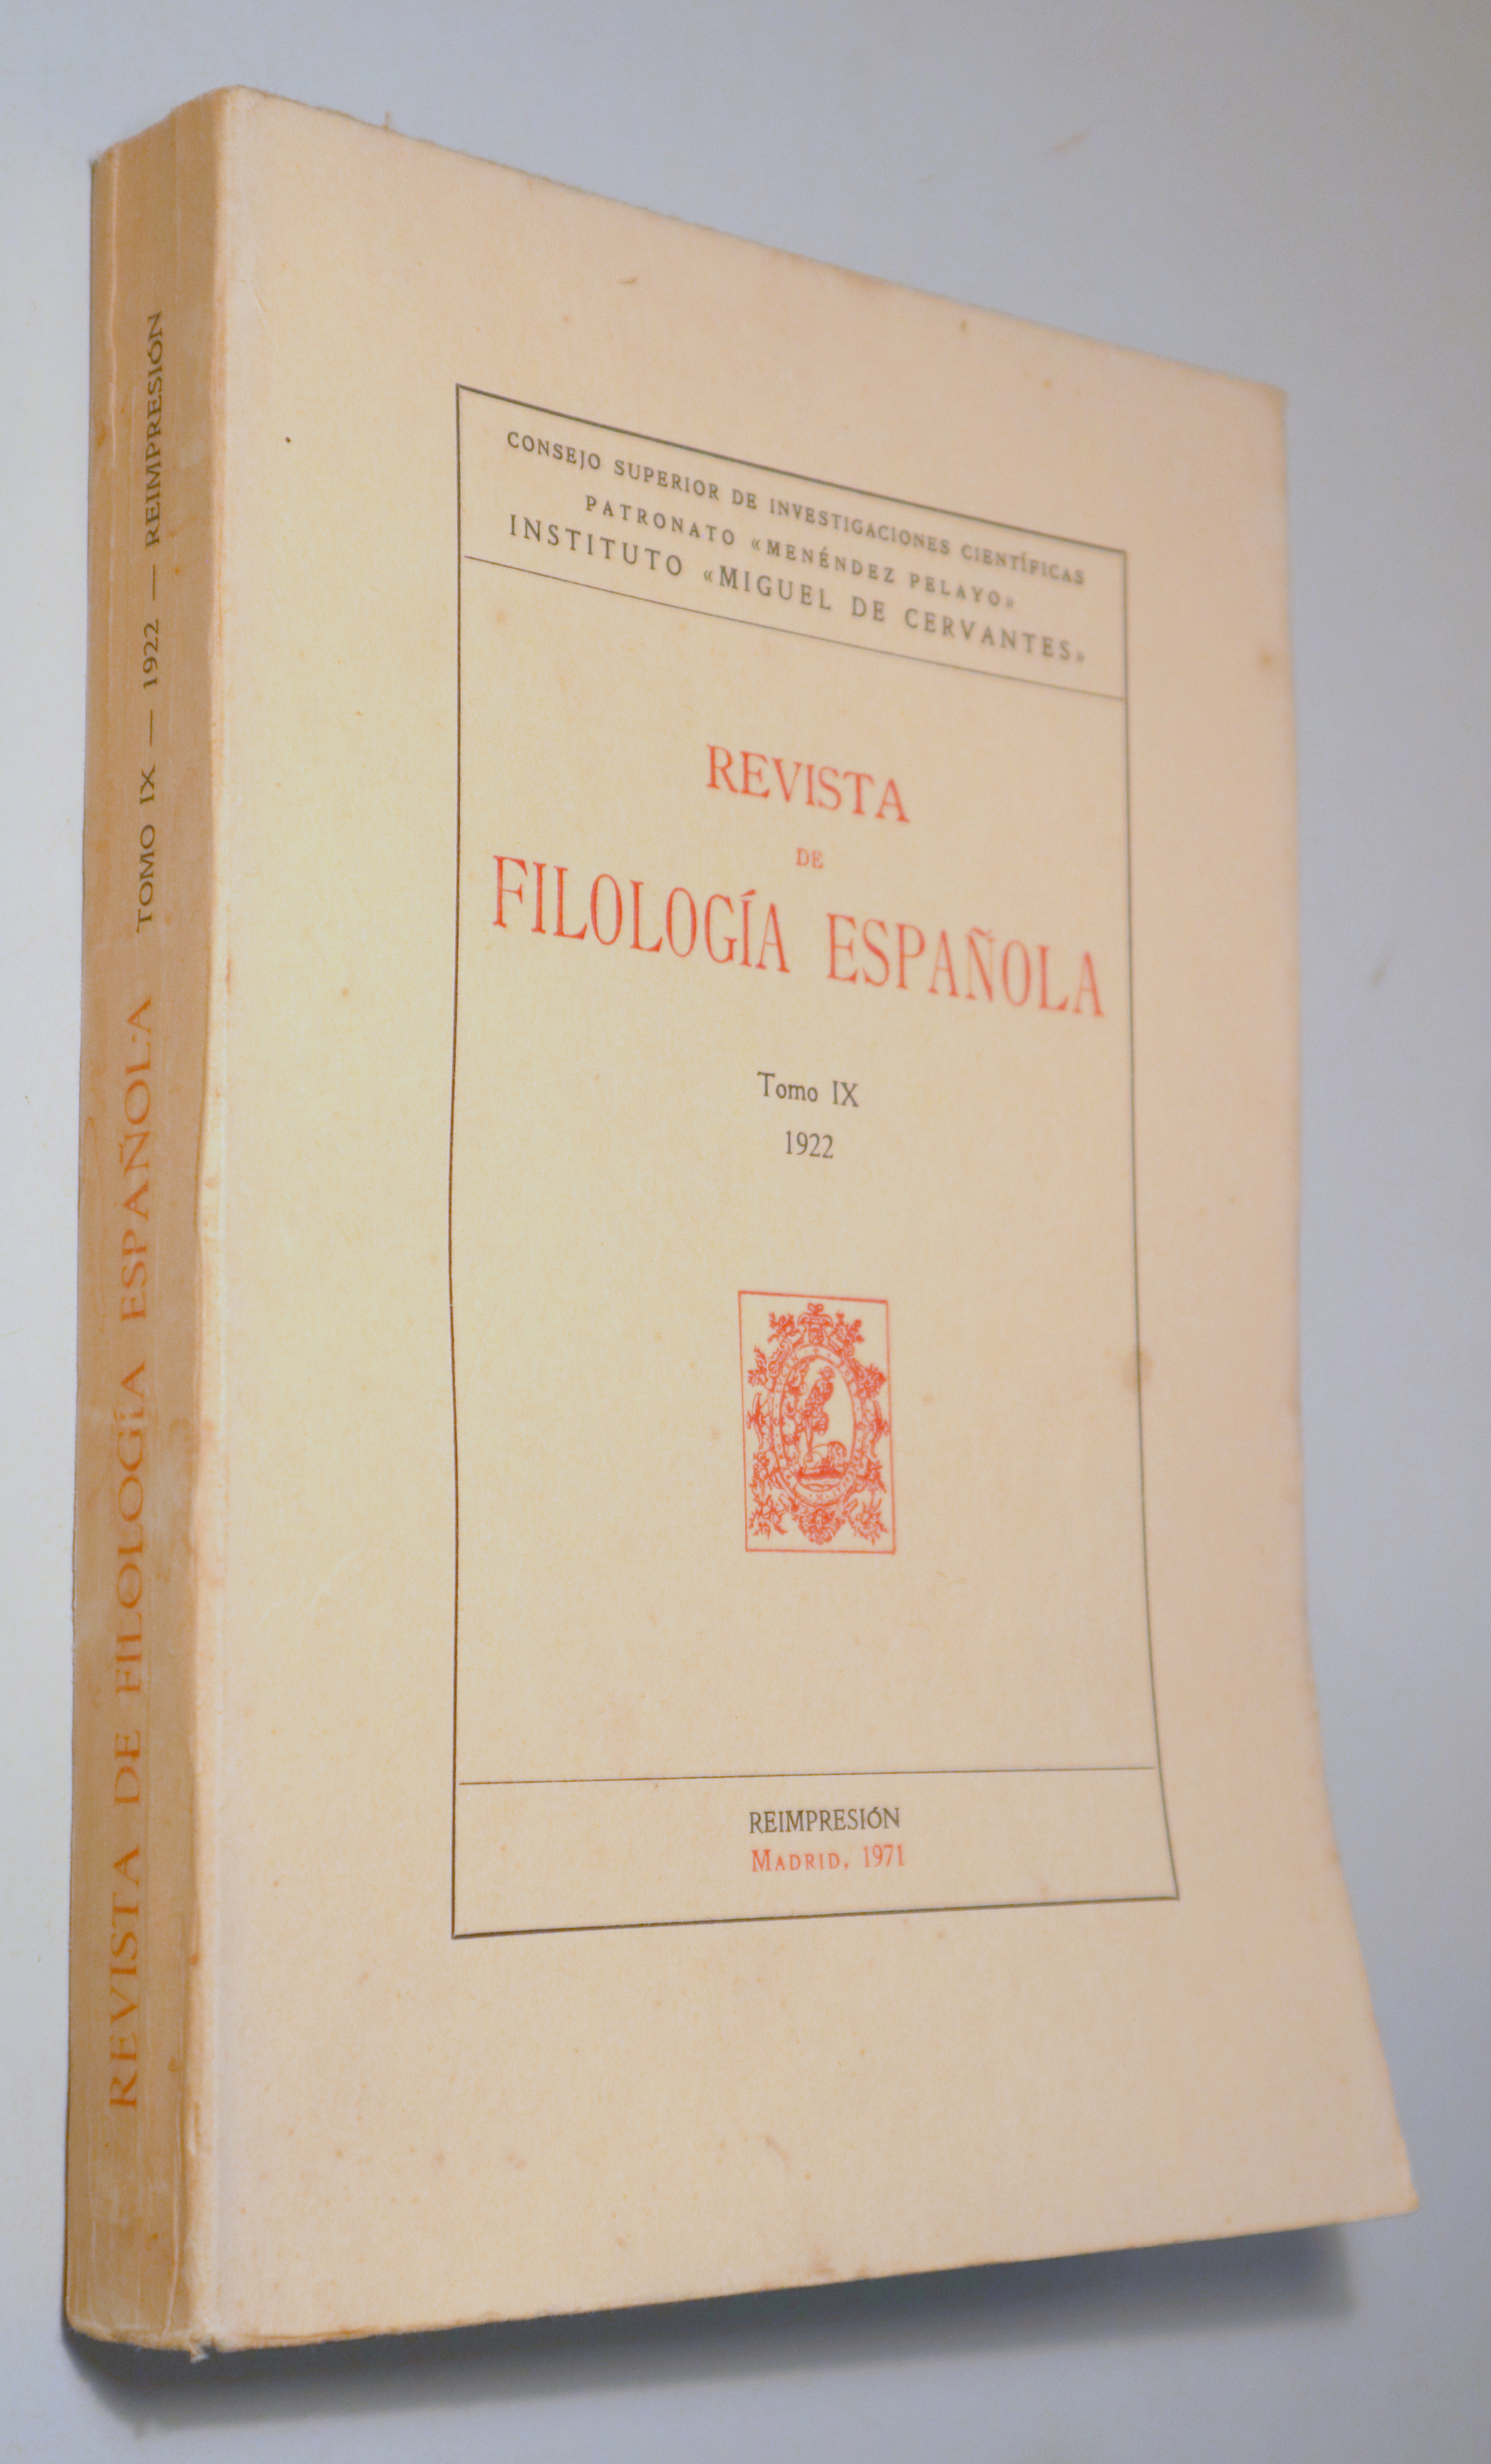 REVISTA DE FILOLOGÍA ESPAÑOLA. Tomo IX 1922 - Madrid 1971 - Reimpresión